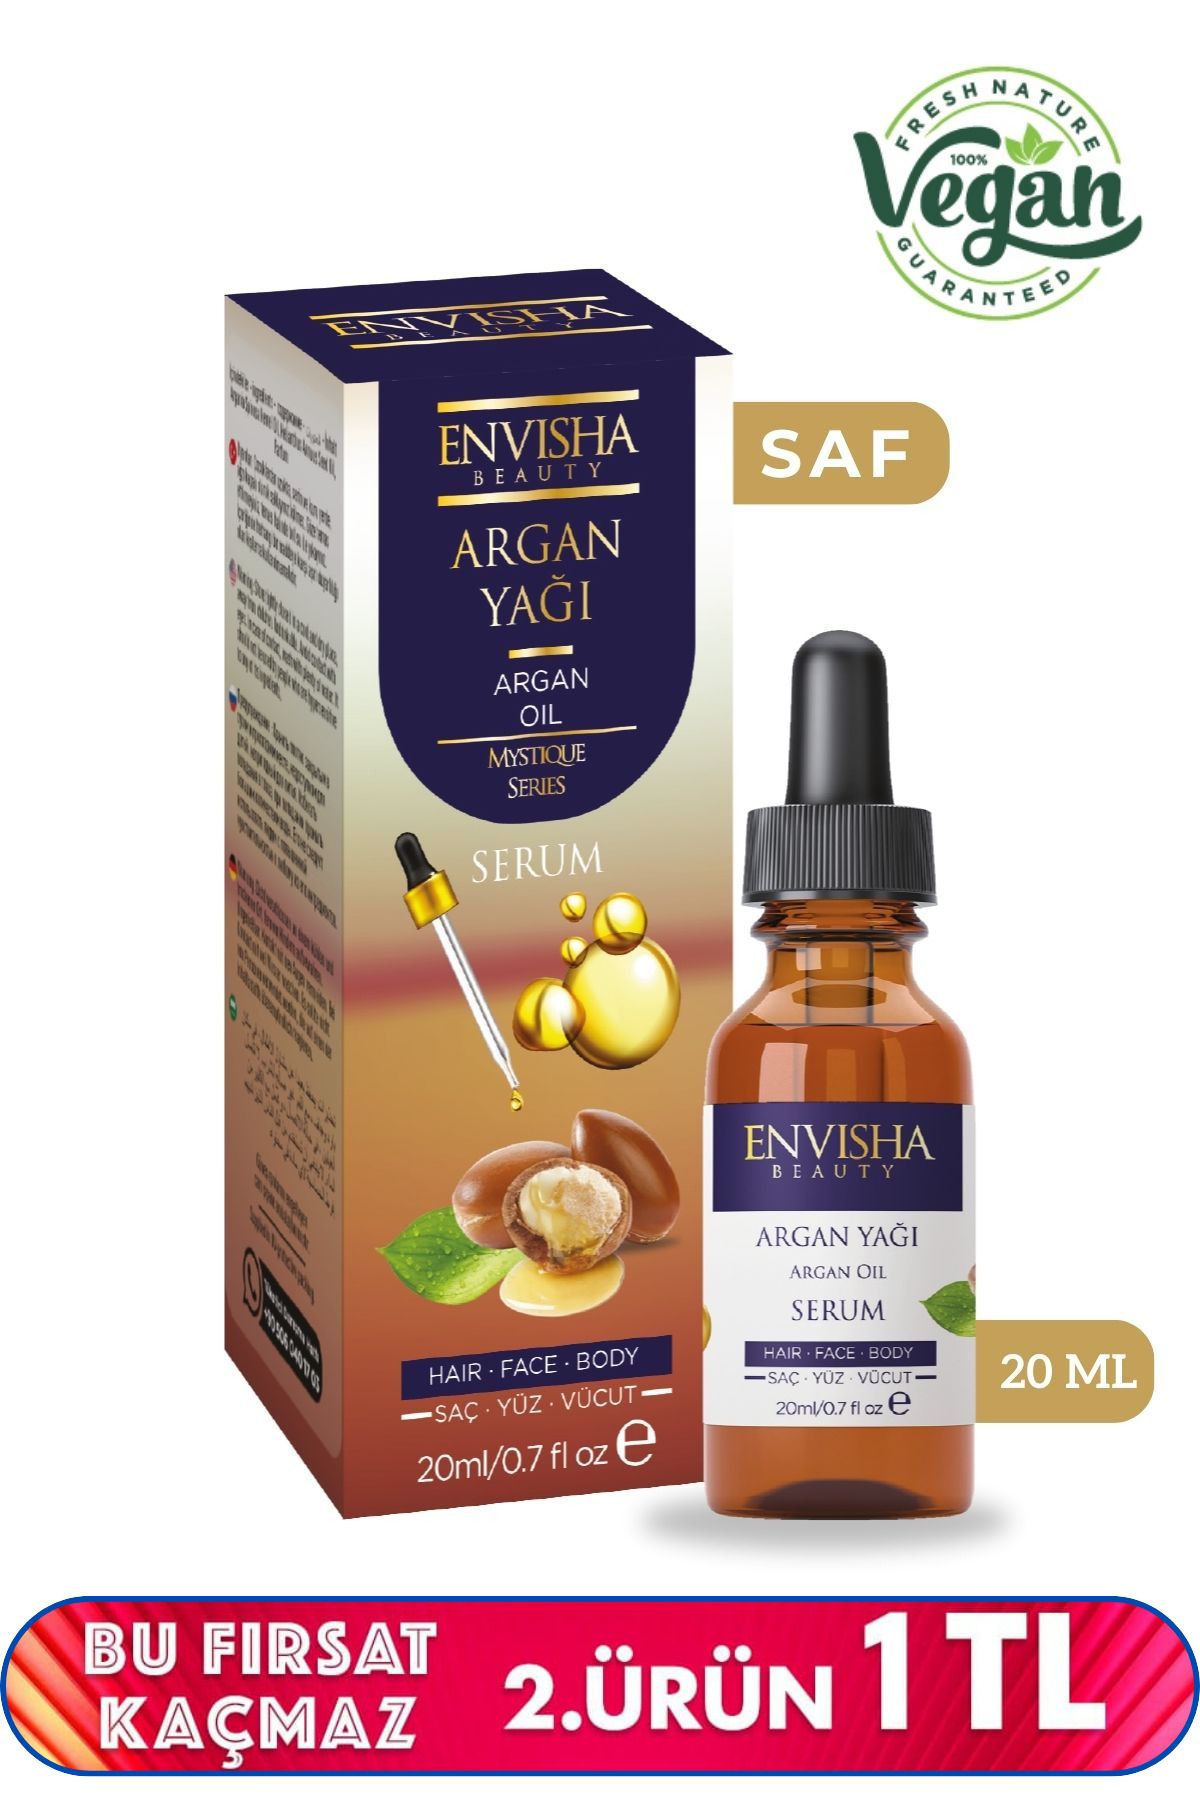 Envisha Beauty Argan Yağı %100 Doğal Bitkisel Yağ Argan Oil 20 ML